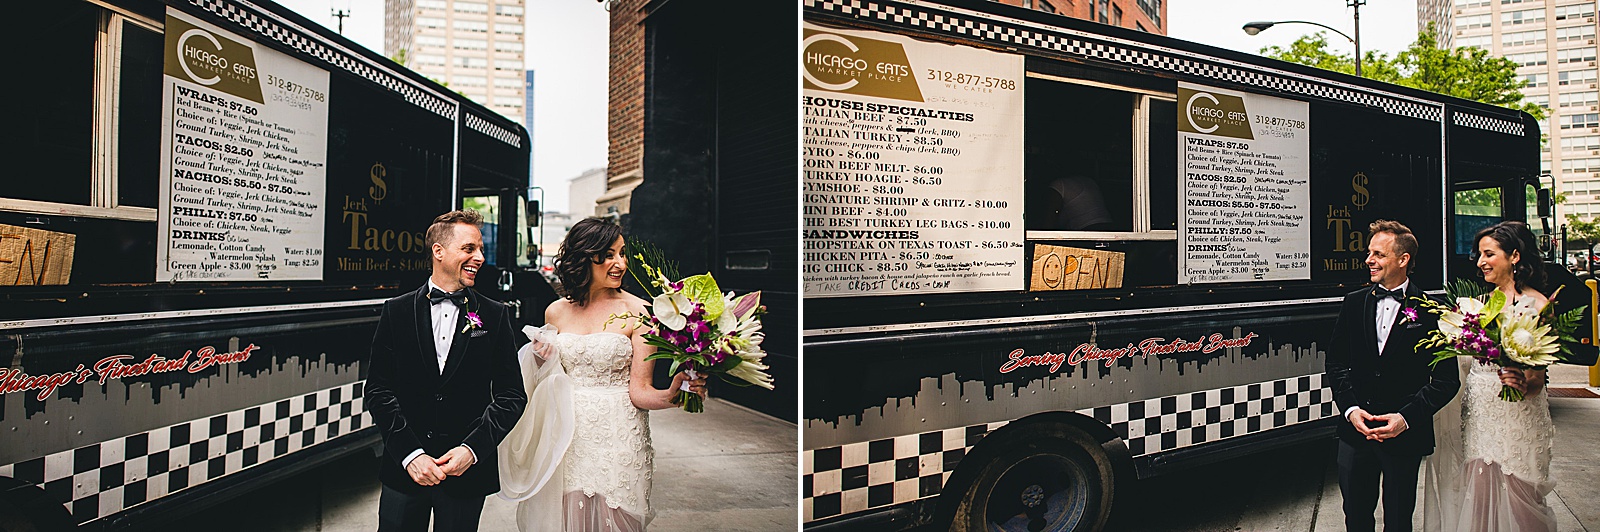 26 taco truck at wedding - Chicago Illuminating Company Wedding // Samantha + Jeremy